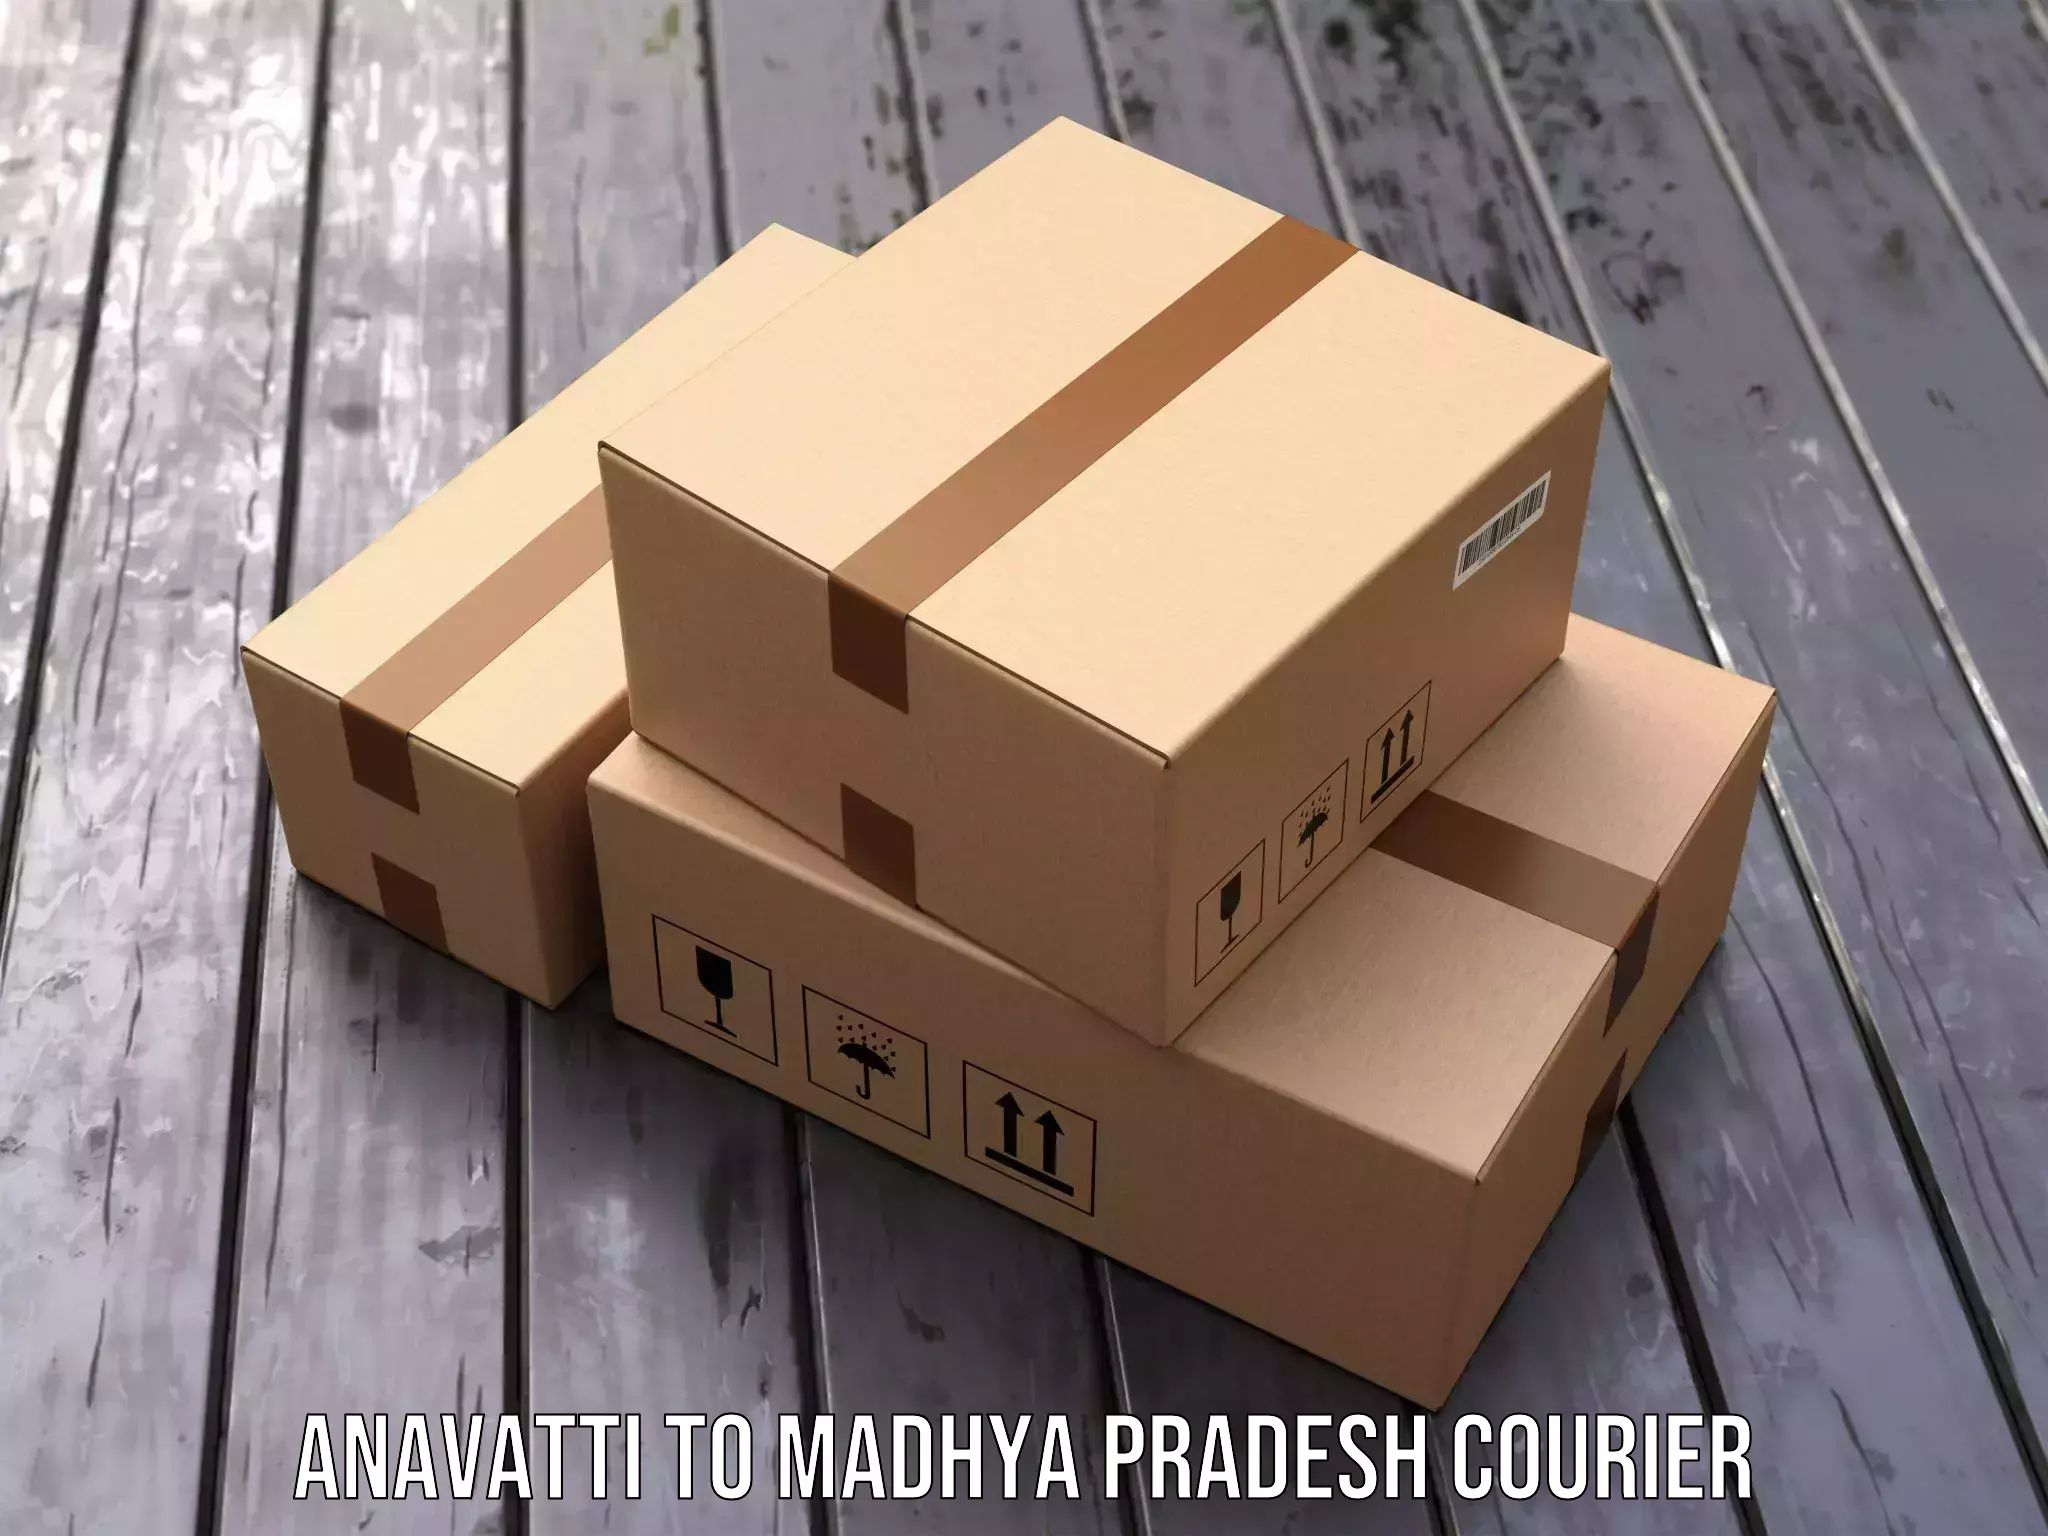 Urban courier service Anavatti to Guna